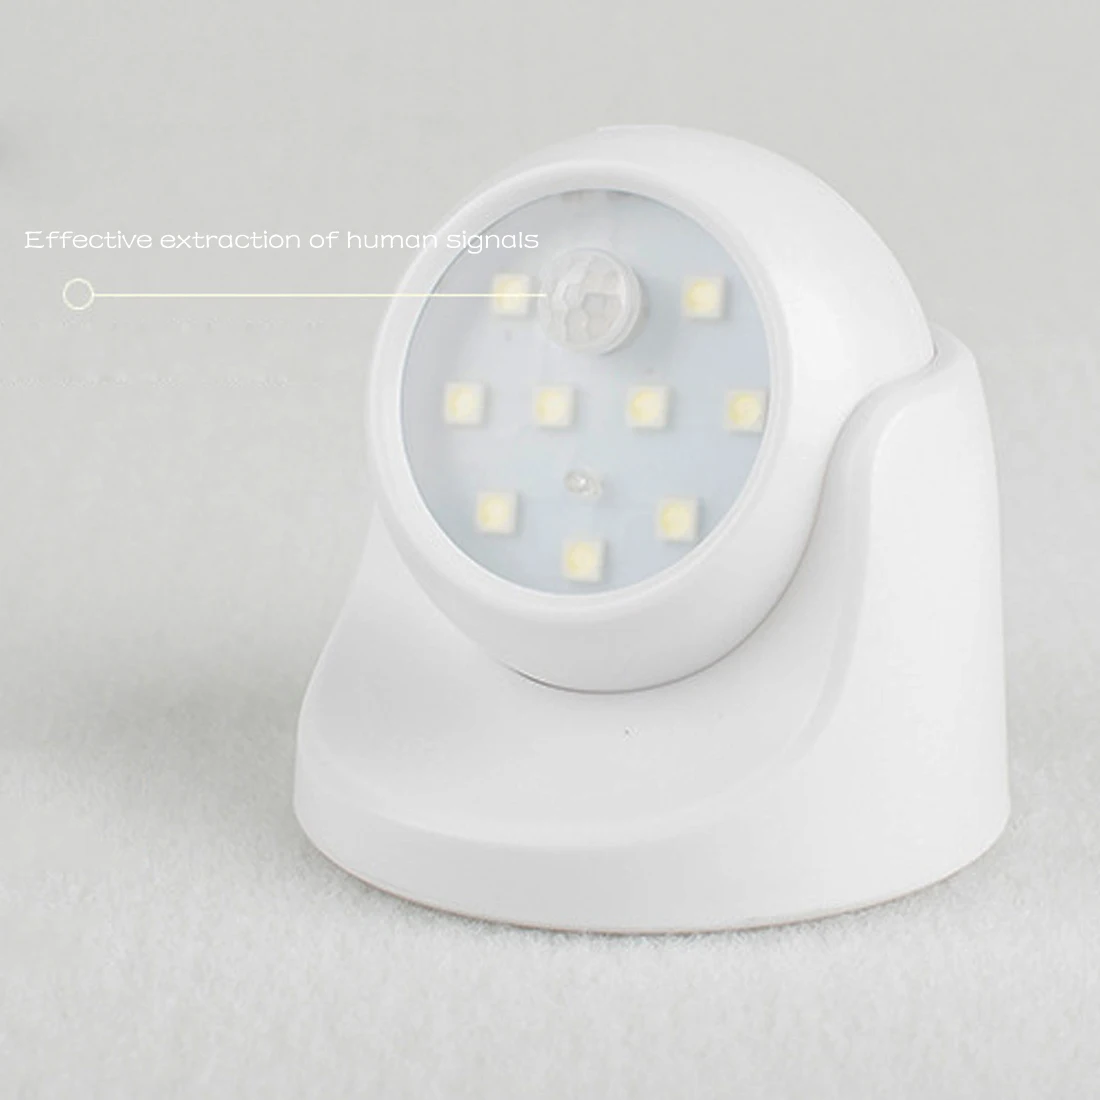 9 лампочек, светодиодный настенный светильник с датчиком движения, Ночной светильник, вращение на 360 градусов, беспроводной автоматический PIR ИК-детектор, охранная лампа